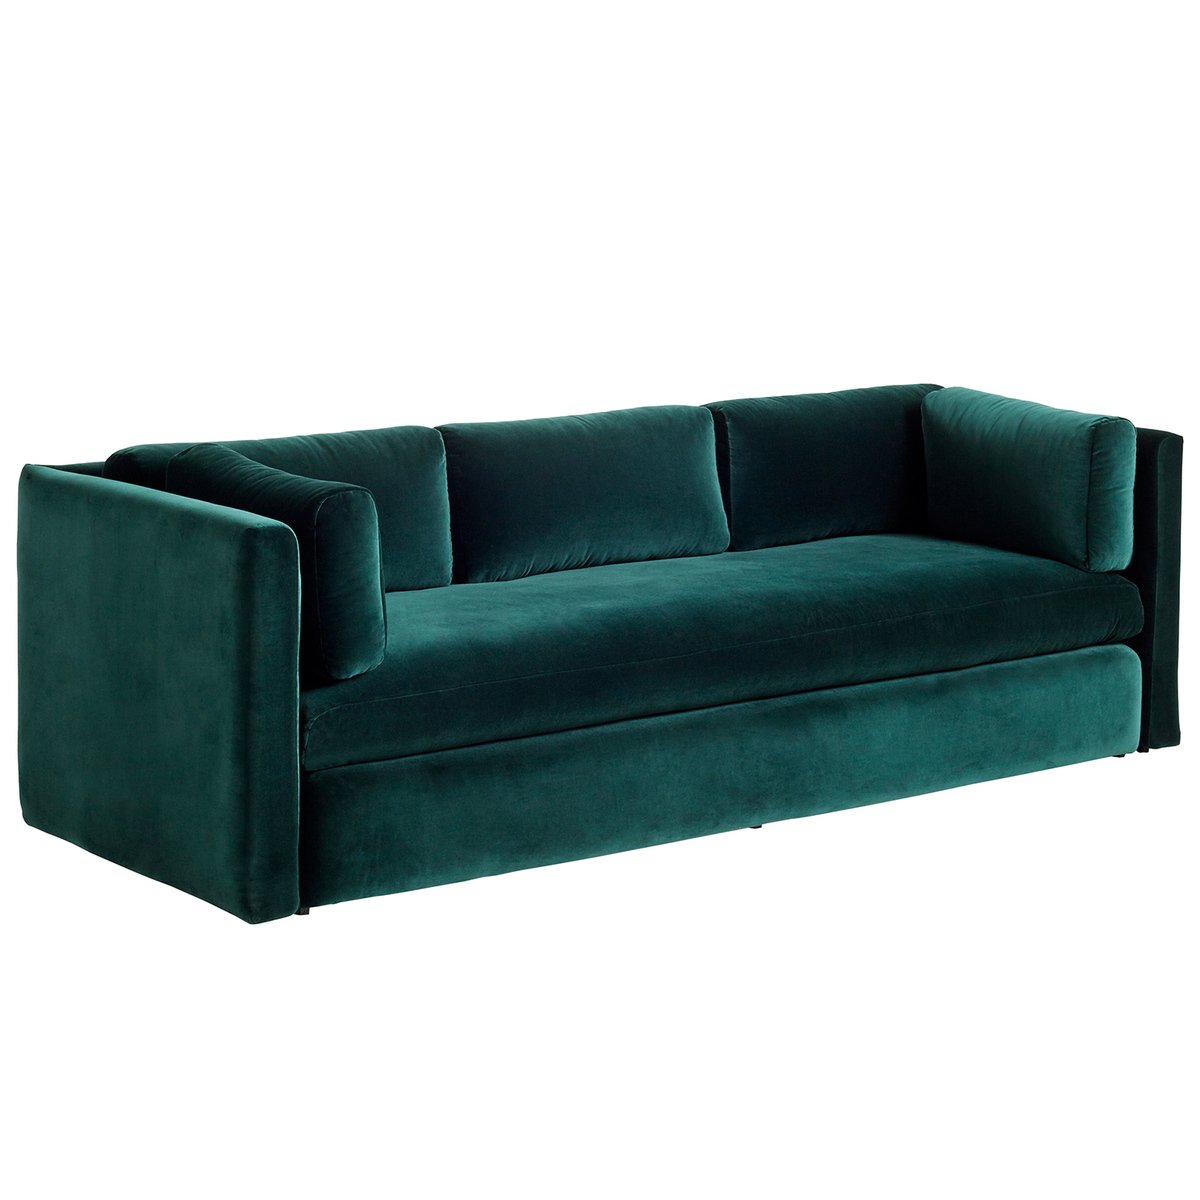 Aanzetten Terug, terug, terug deel pijpleiding Hackney sofa, 3-seater, Lola dark green | Finnish Design Shop